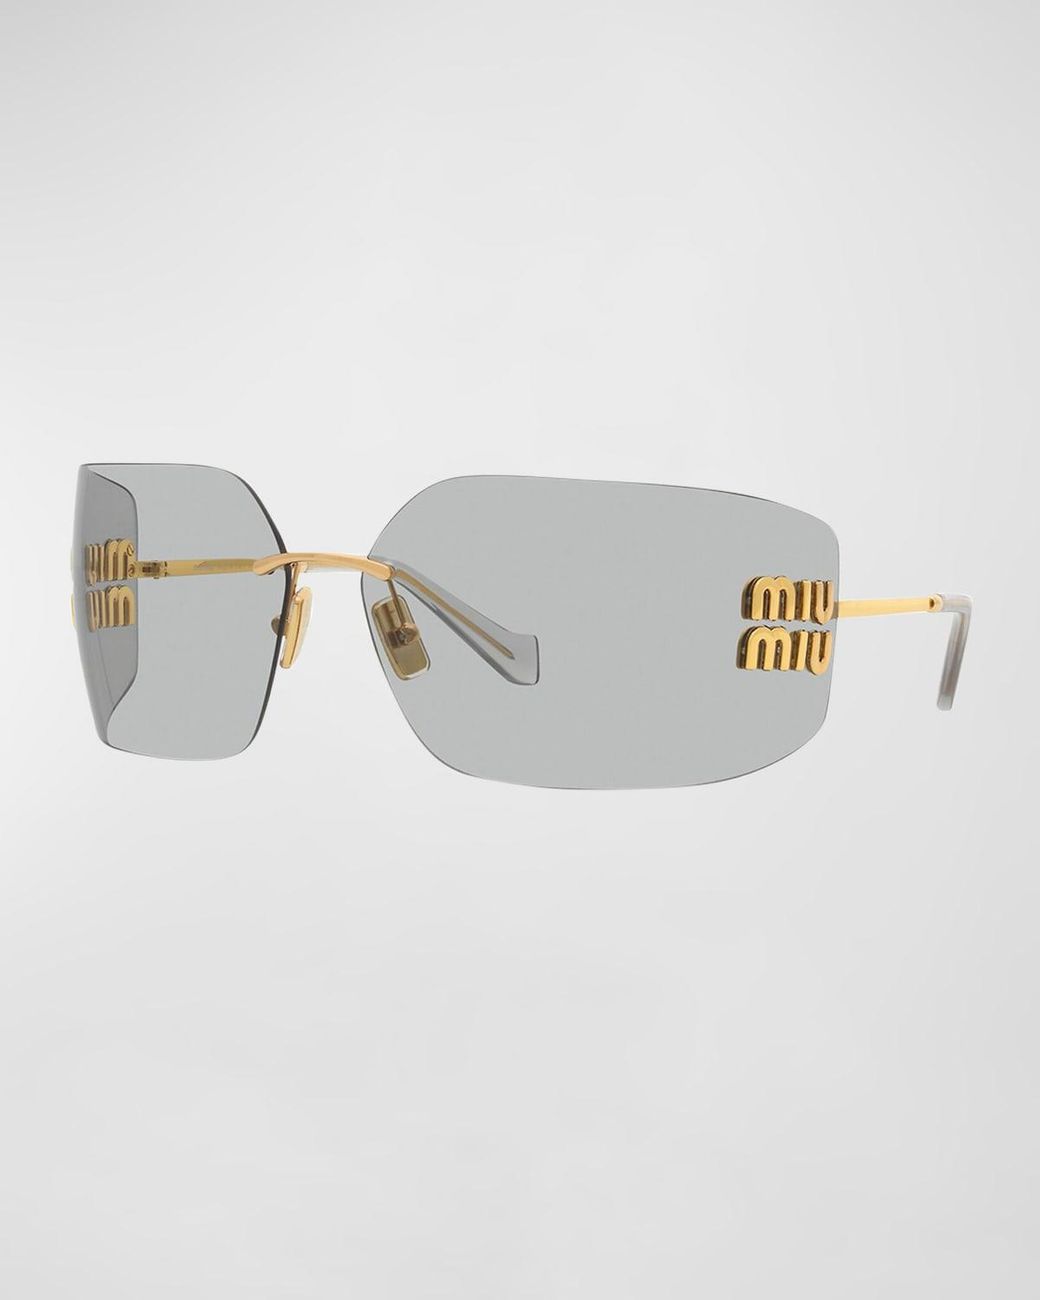 Miu Miu Mu 54ys 80 Rimless Titanium Wrap Sunglasses in Gray | Lyst